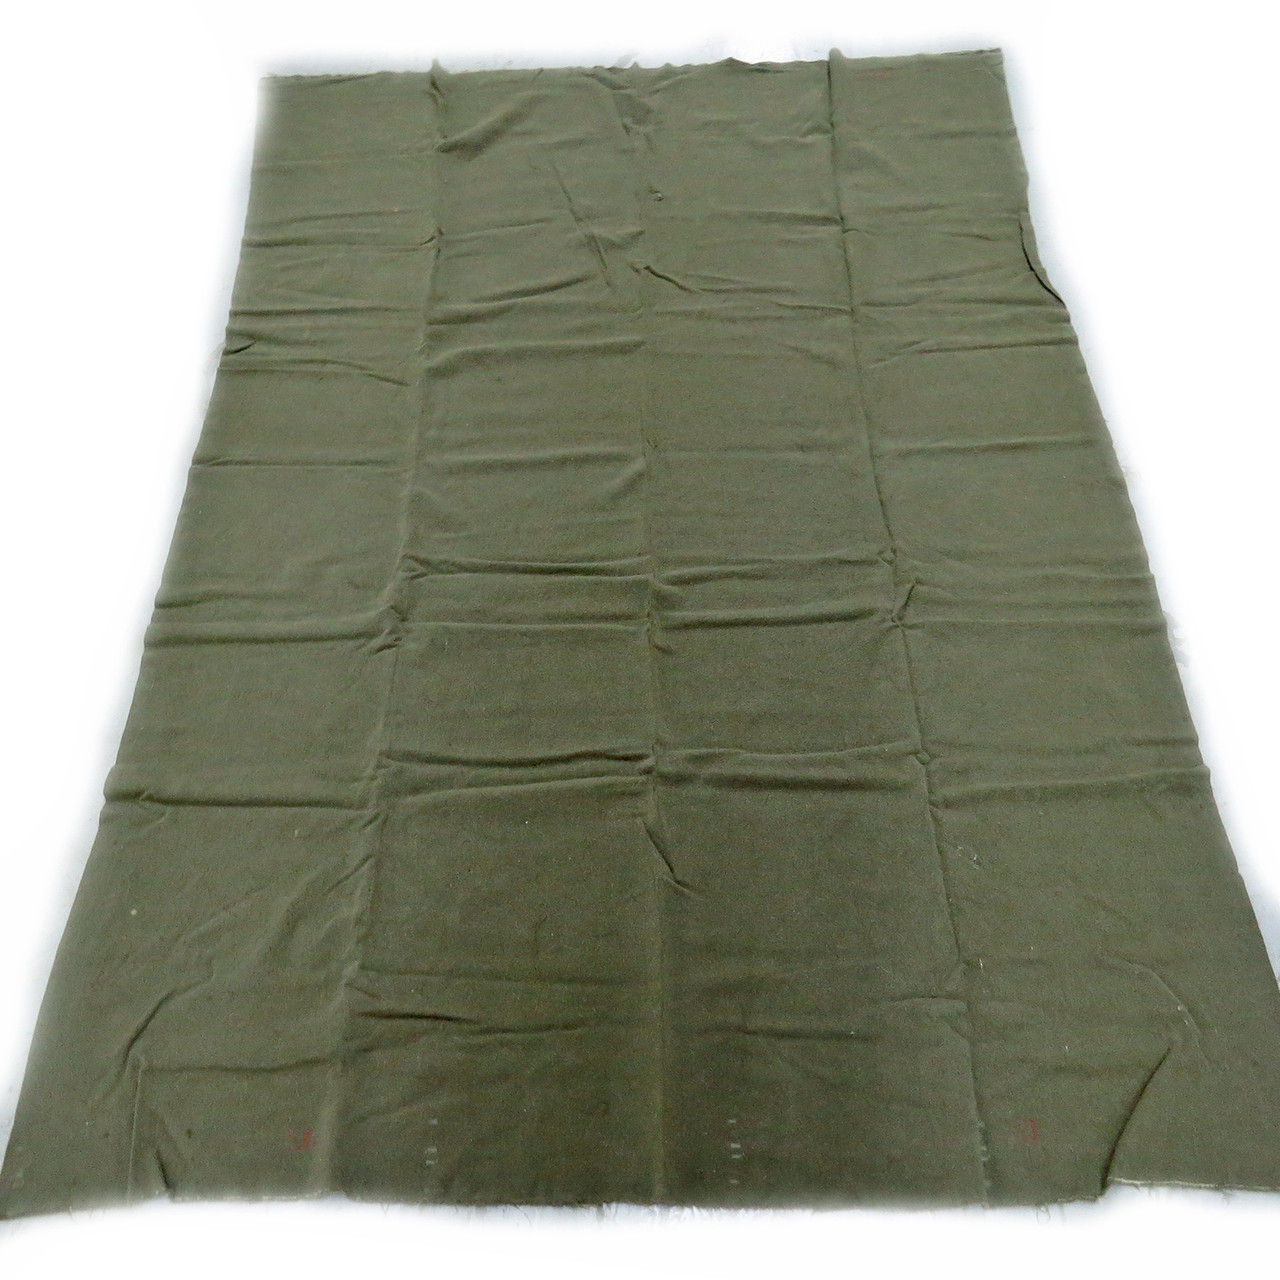 USMC Wool Blanket - Pre-WWII